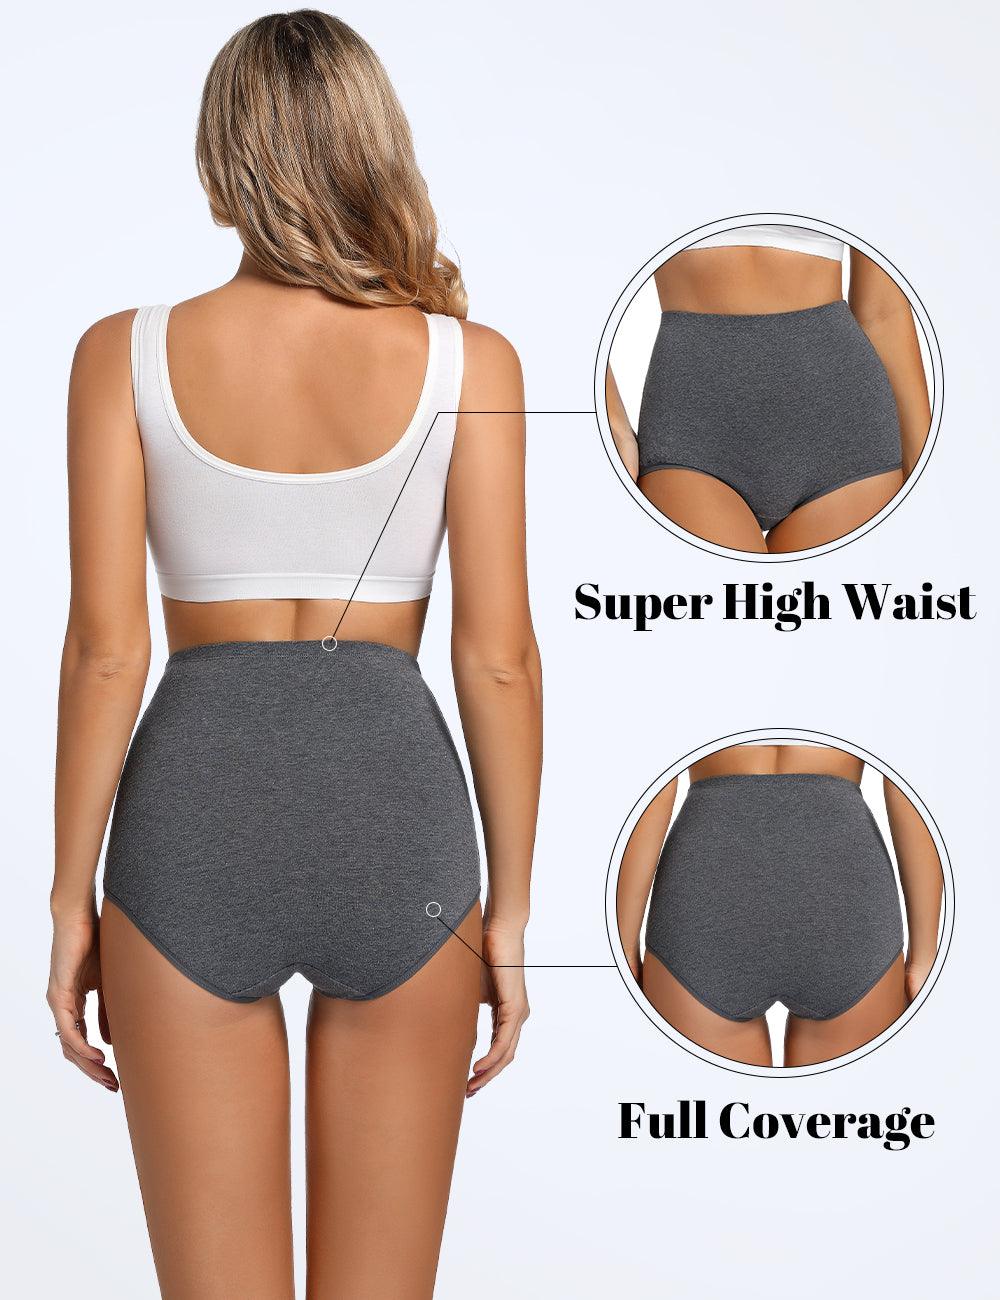 Molasus Women's Cotton Underwear Super High Waisted Briefs Ladies